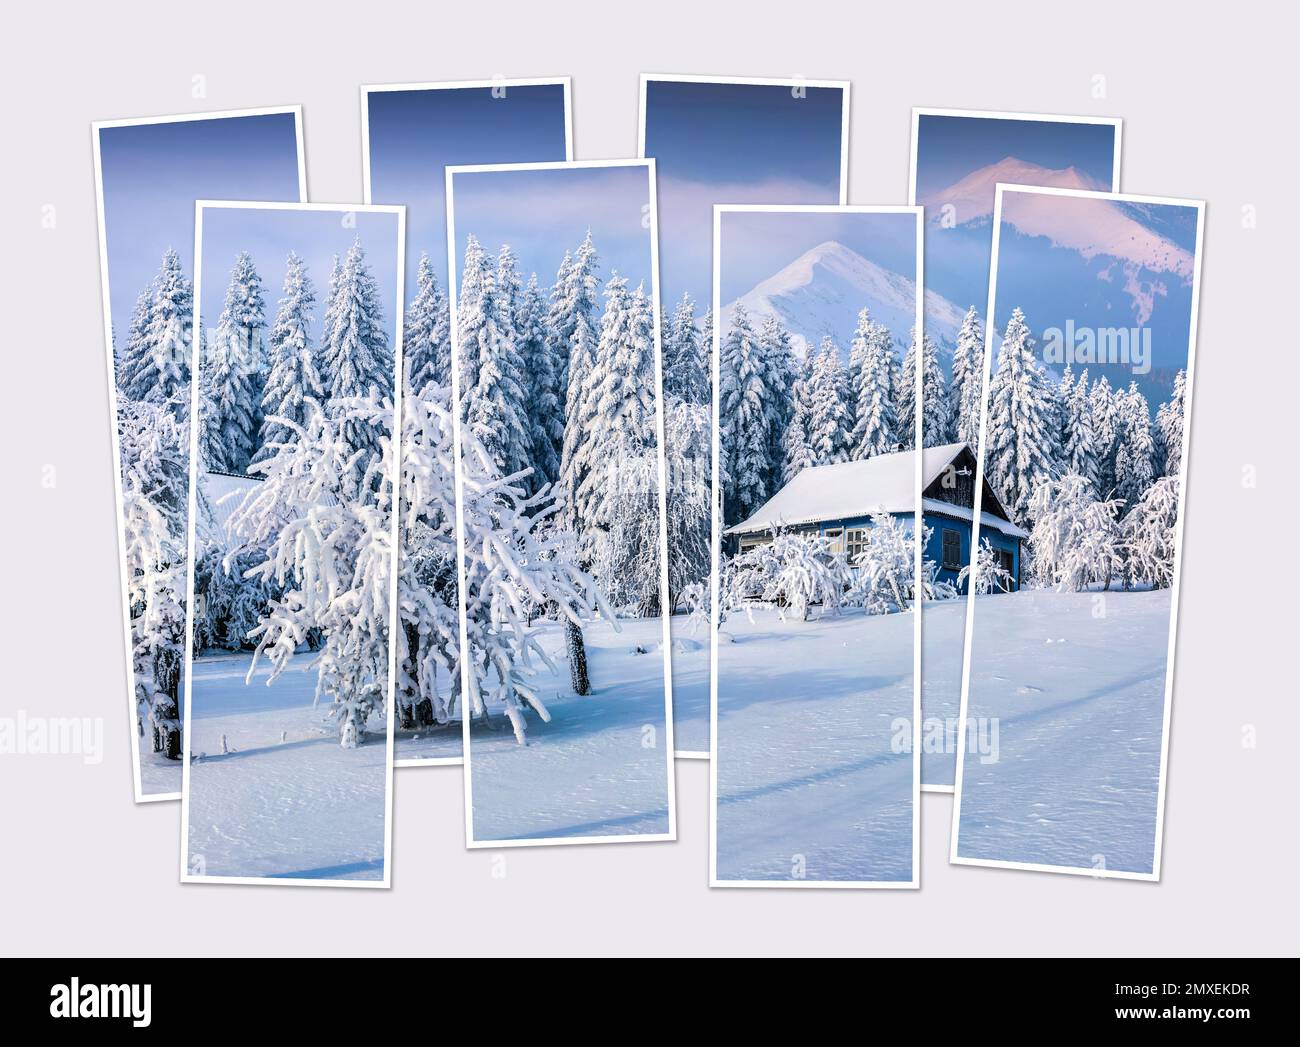 Isolato otto cornici collage di foto della scena invernale dopo la nevicata pesante. Un'alba fantastica nel villaggio dei Carpazi. Simulazione di foto modulari. Foto Stock